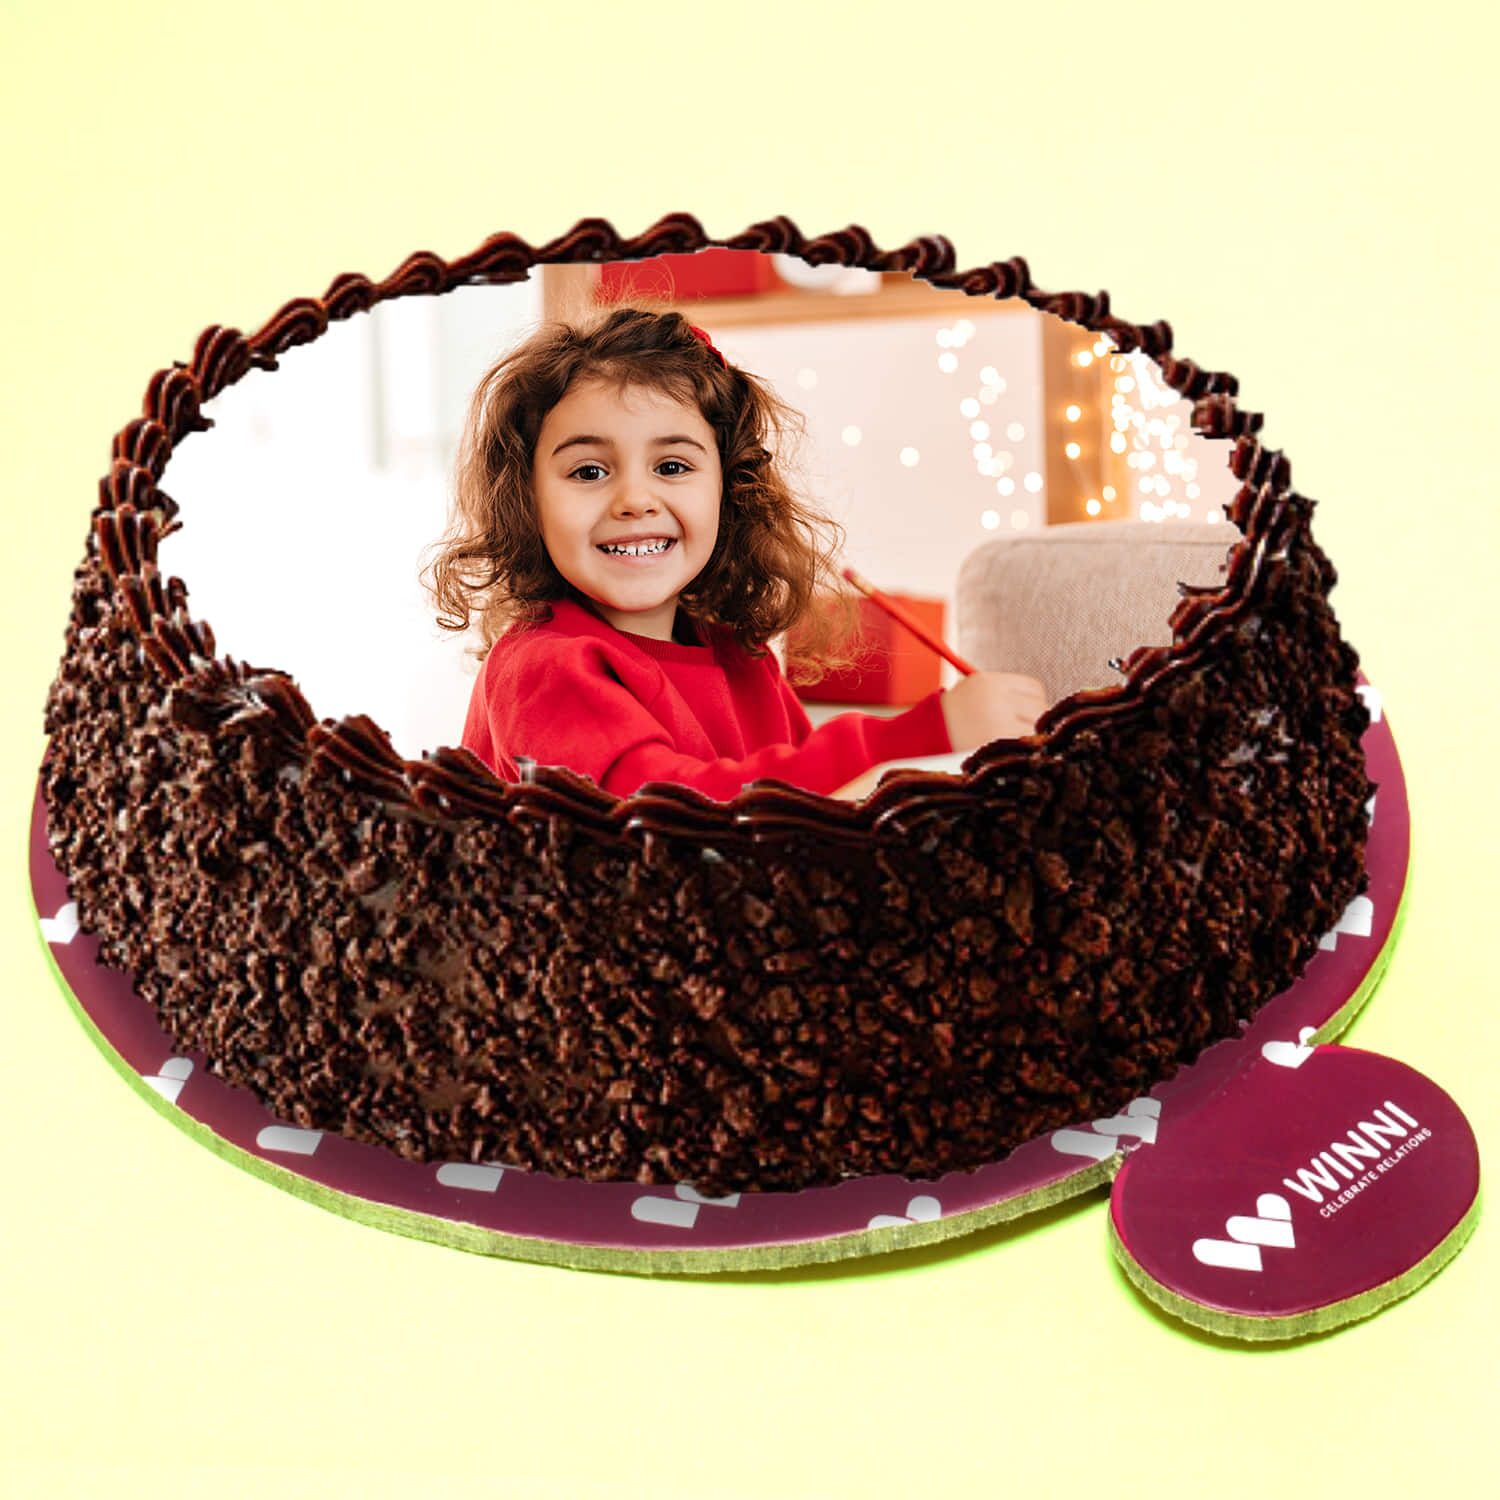 Buy/Send Black Forest Cake Half kg Online- FNP